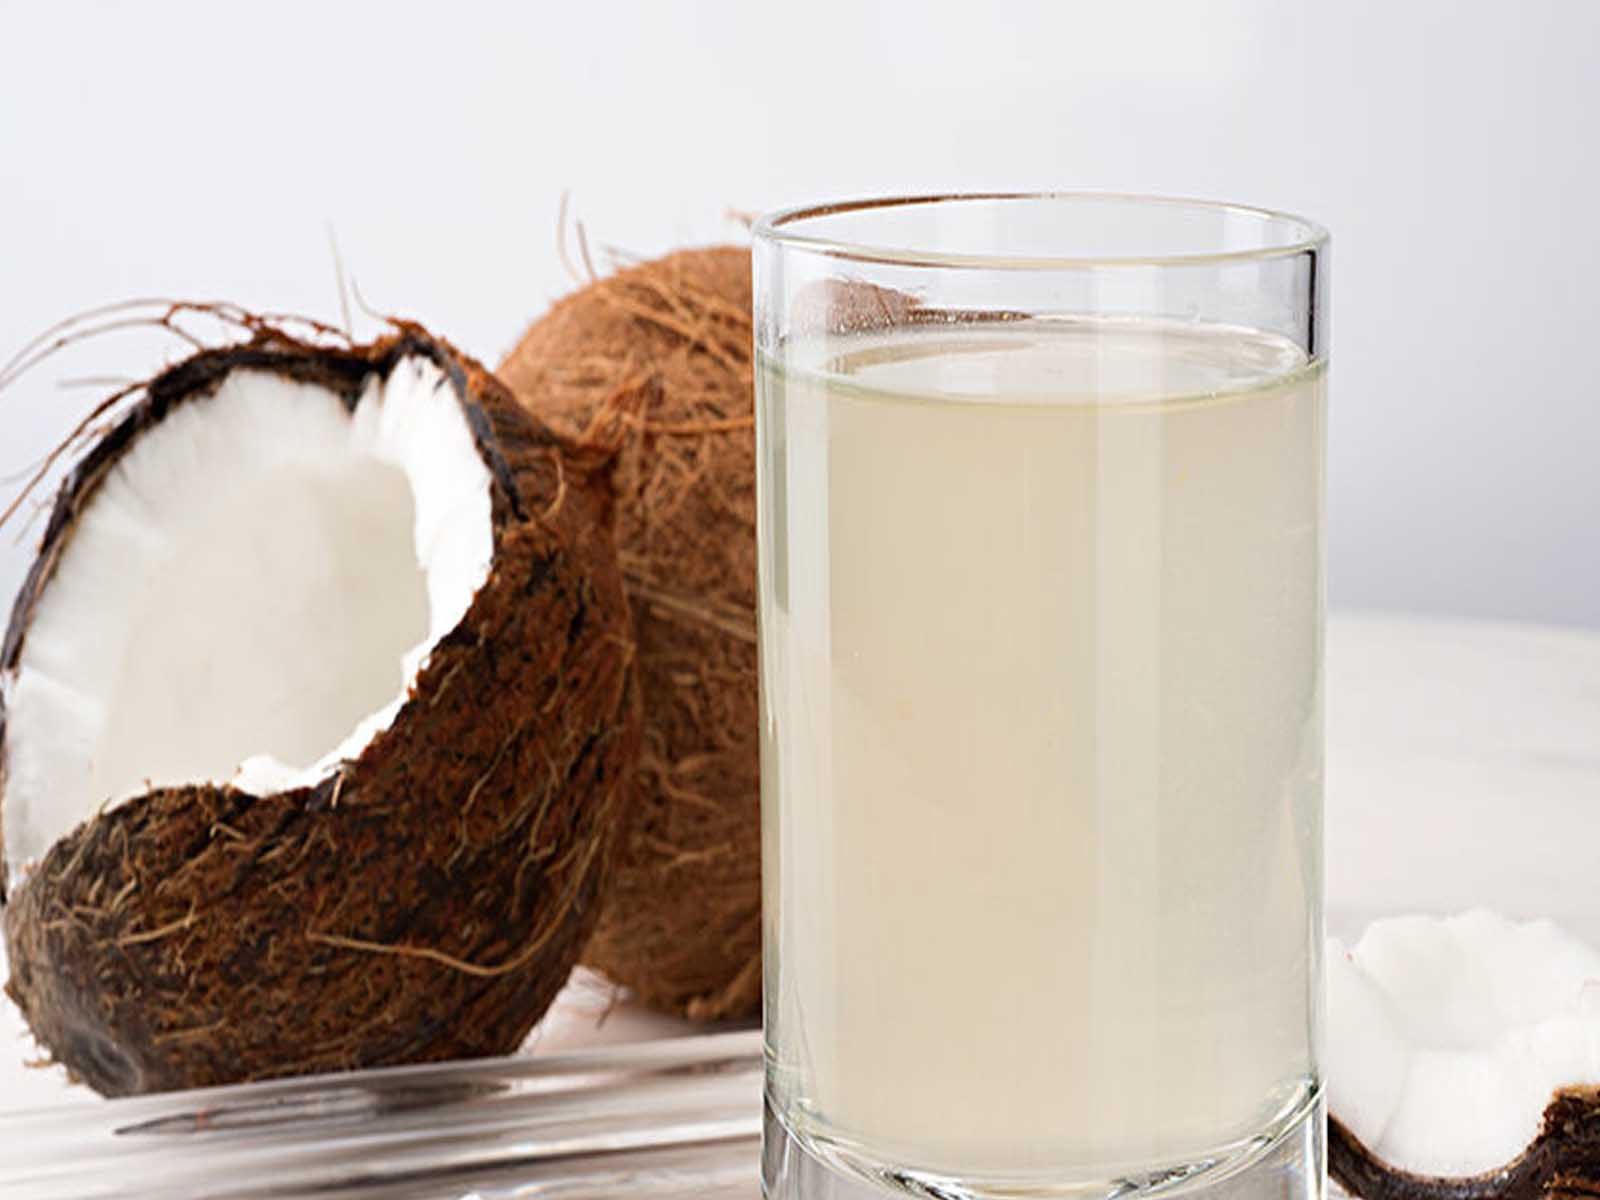 Coconut Water Health Side Effects:ਸਾਵਧਾਨ! ਨਾਰੀਅਲ ਪਾਣੀ ਇਨ੍ਹਾਂ ਲੋਕਾਂ ਦੀ ਸਿਹਤ ਲਈ ਸਾਬਿਤ ਹੋ ਸਕਦਾ ਹੈ ਨੁਕਸਾਨਦਾਇਕ
